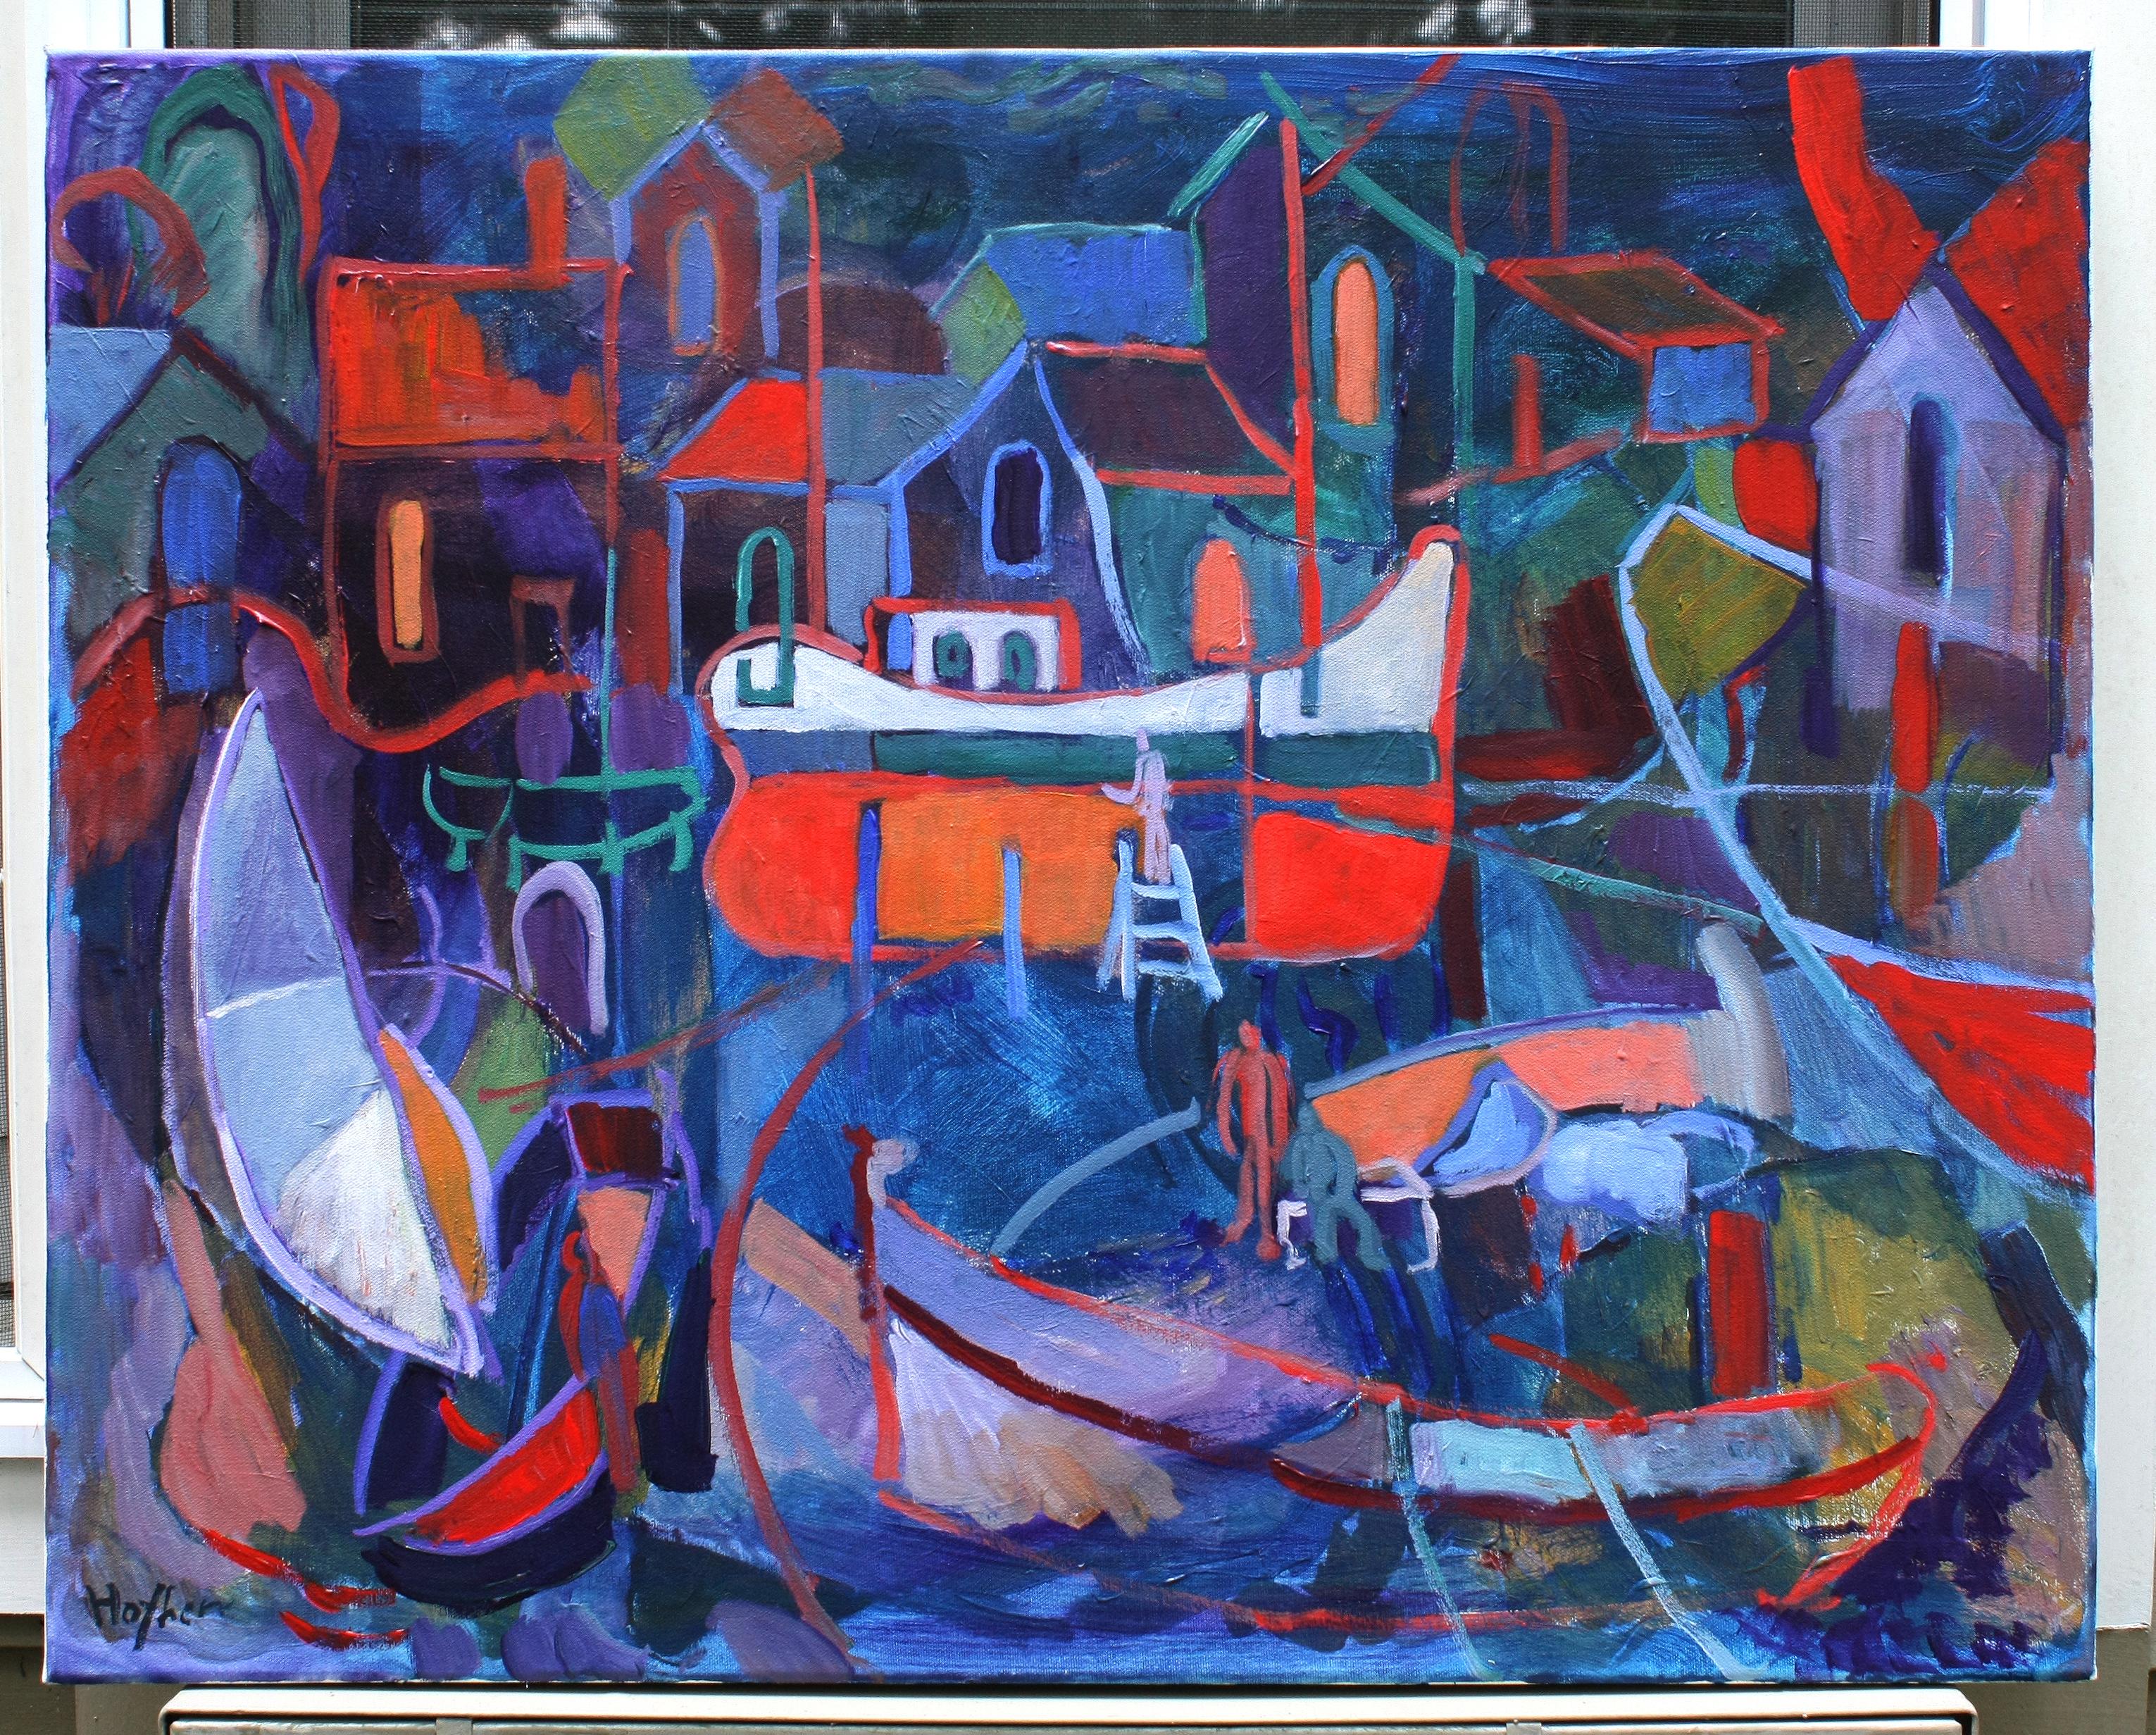 Boatyard, Originalgemälde (Expressionismus), Painting, von Robert Hofherr